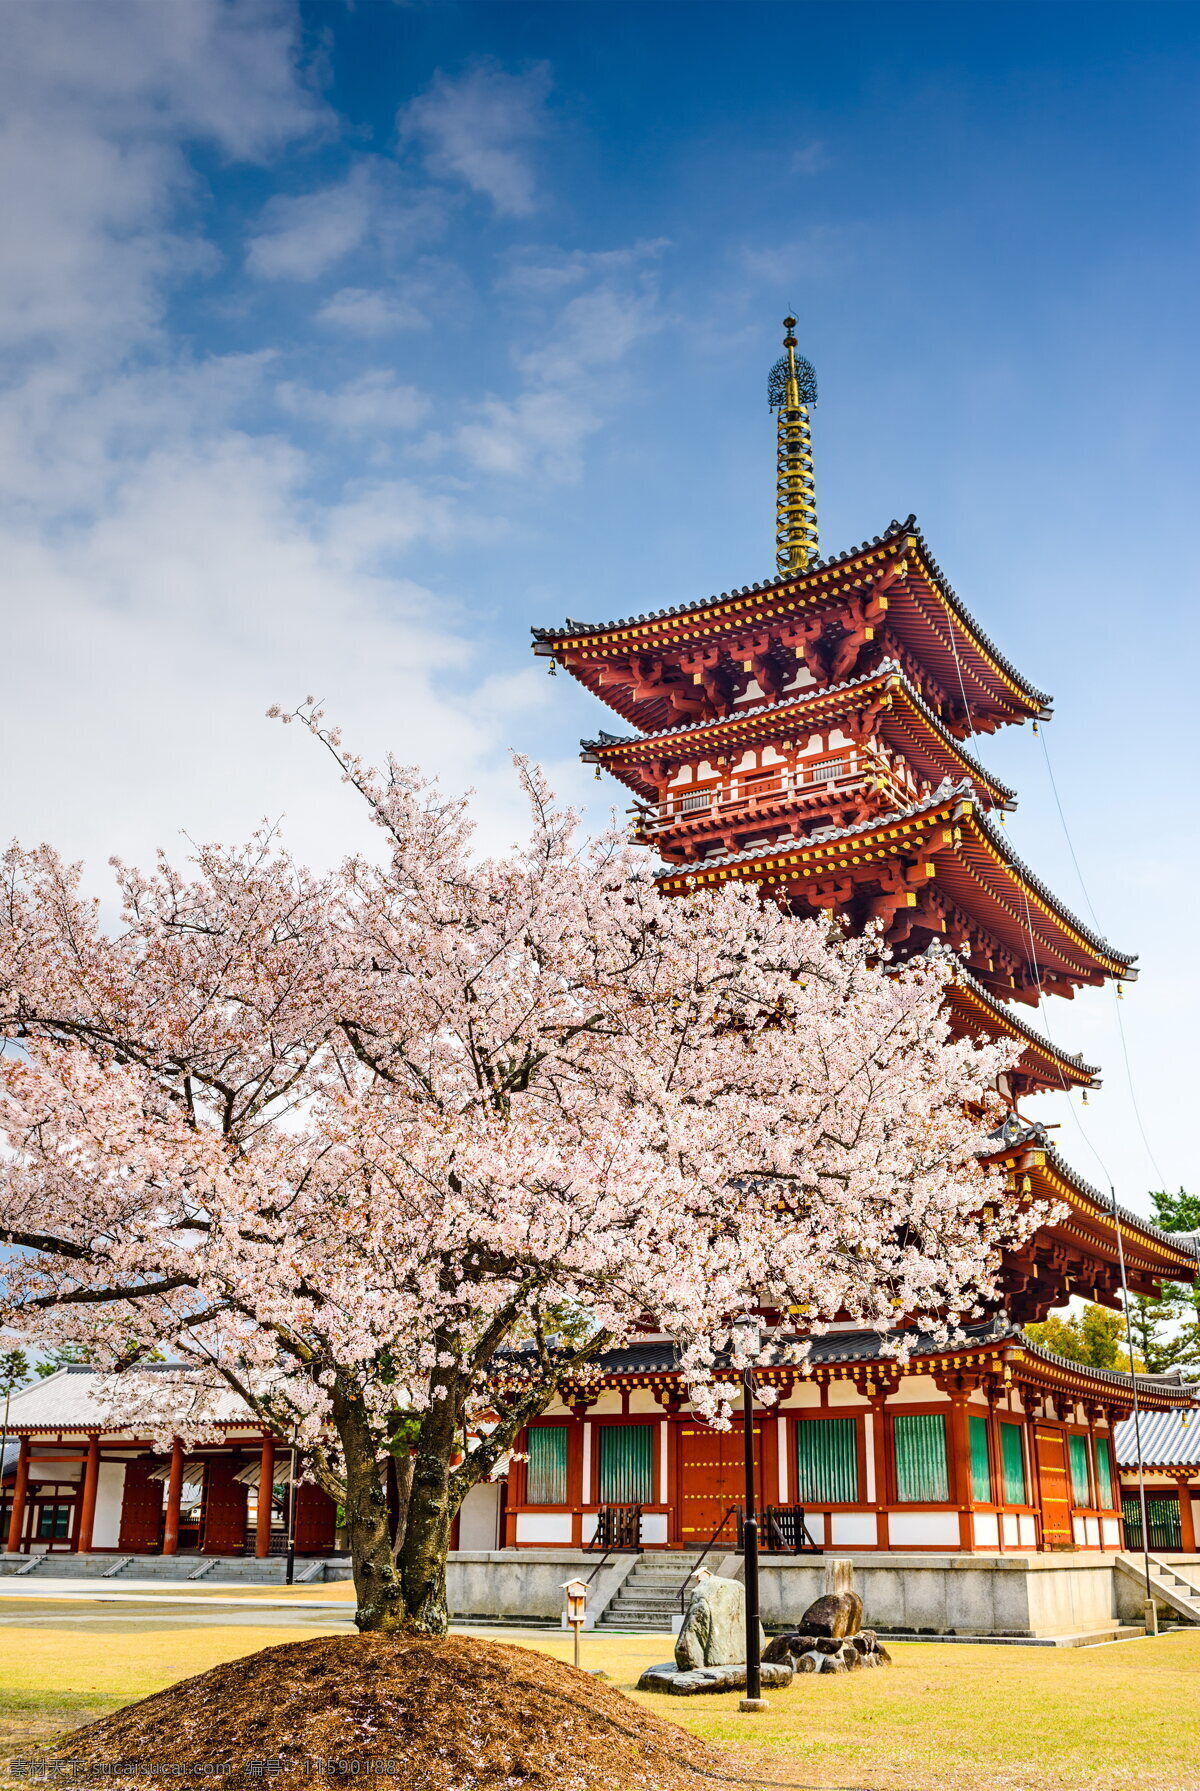 日本 樱花树 日本樱花 樱花 树木 粉色花朵 鲜花 花枝 日式建筑 阁楼 建筑 粉色樱花 植物 建筑风景 日本风光 蓝色